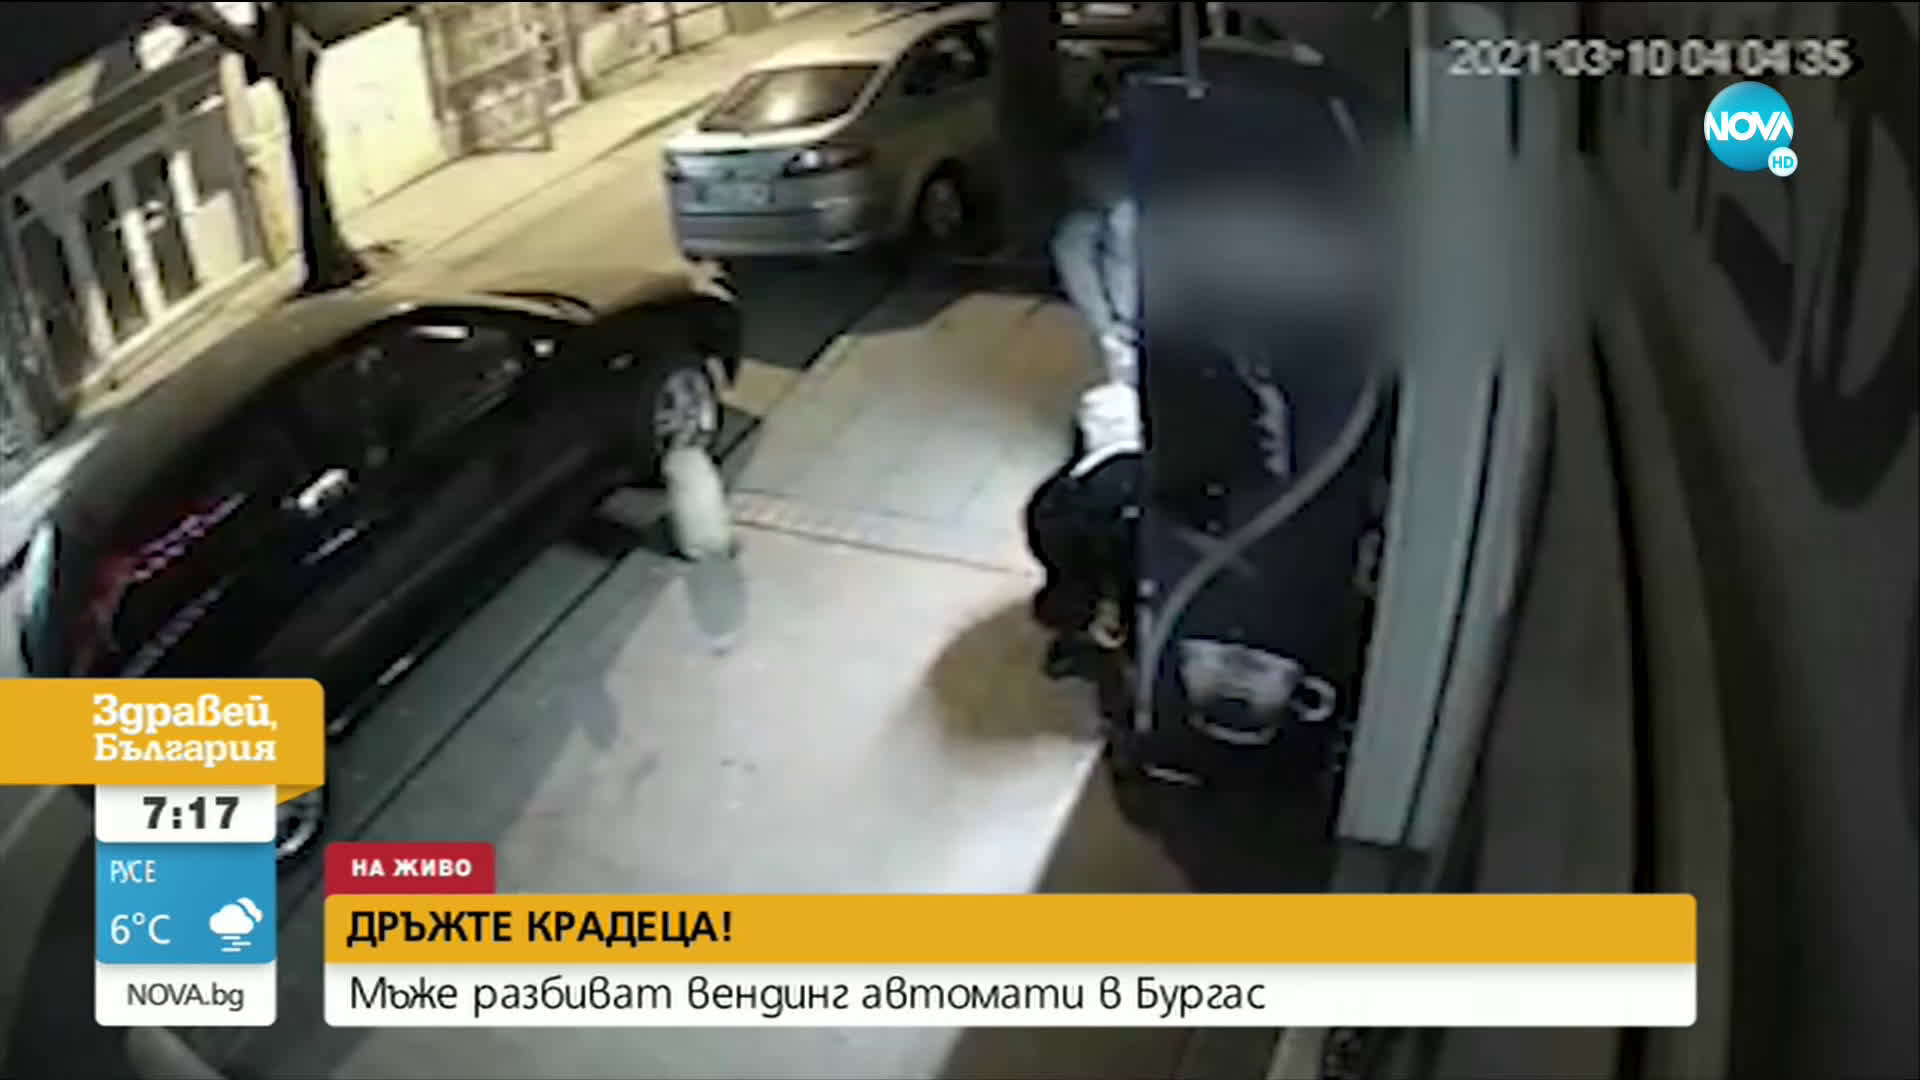 "ДРЪЖТЕ КРАДЕЦА": Мъже разбиват вендинг автомати в Бургас